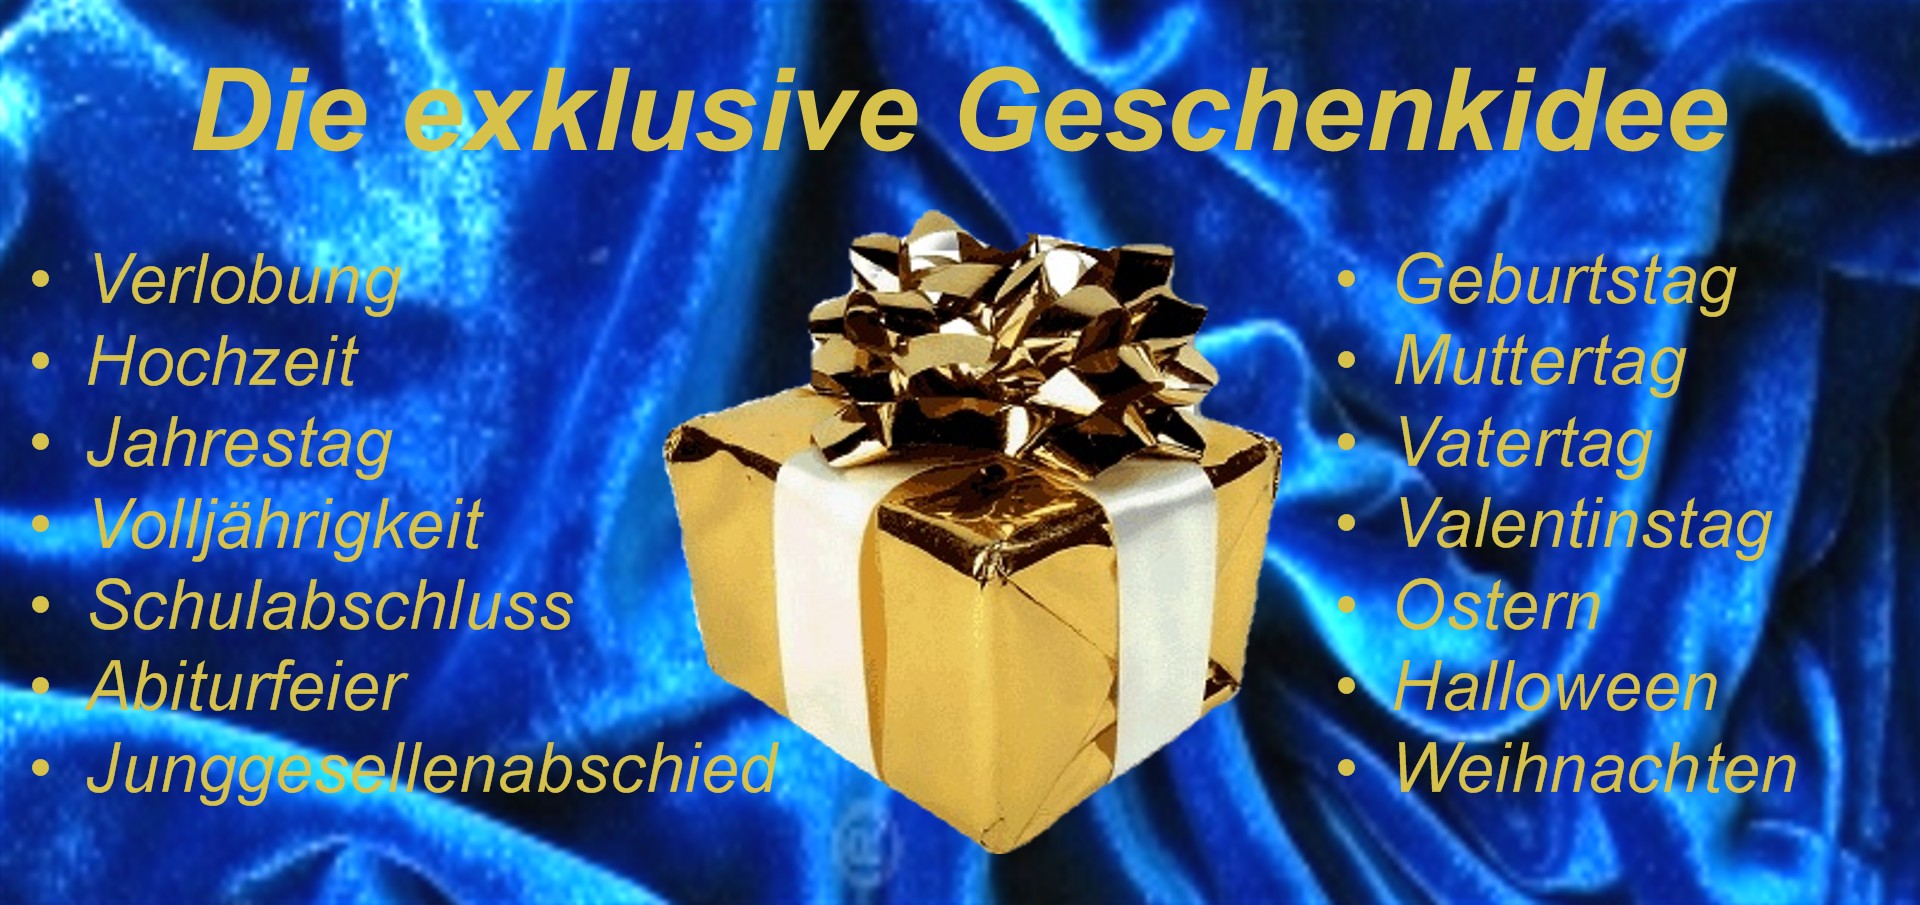 Geschenkidee -Jochen Schweizer - mydays